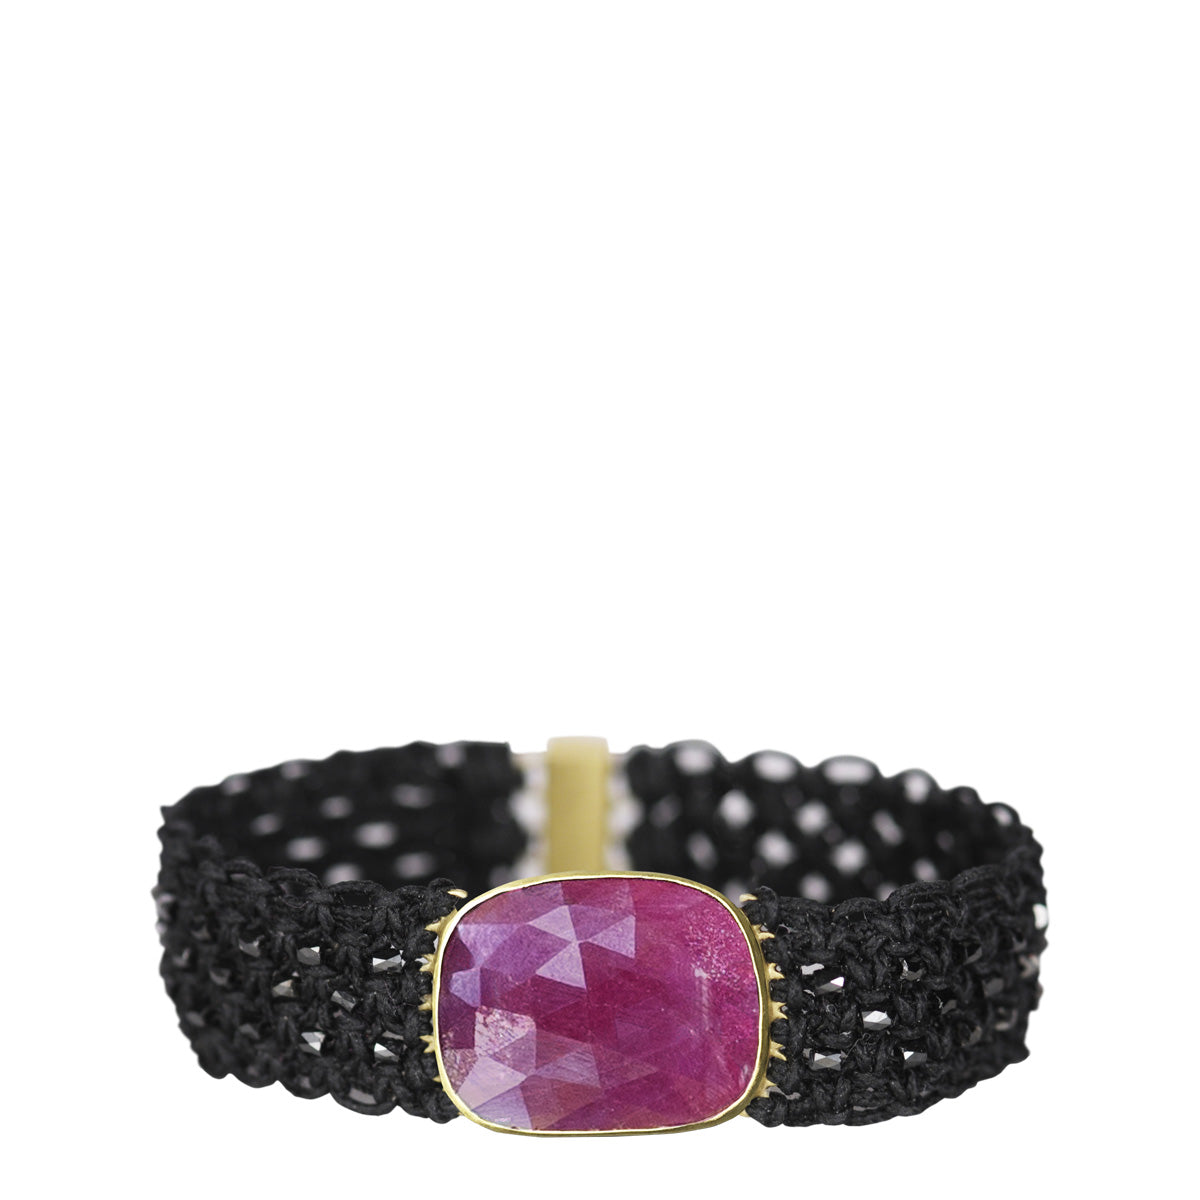 18K Gold Ruby Macramé Bracelet with Black Diamonds